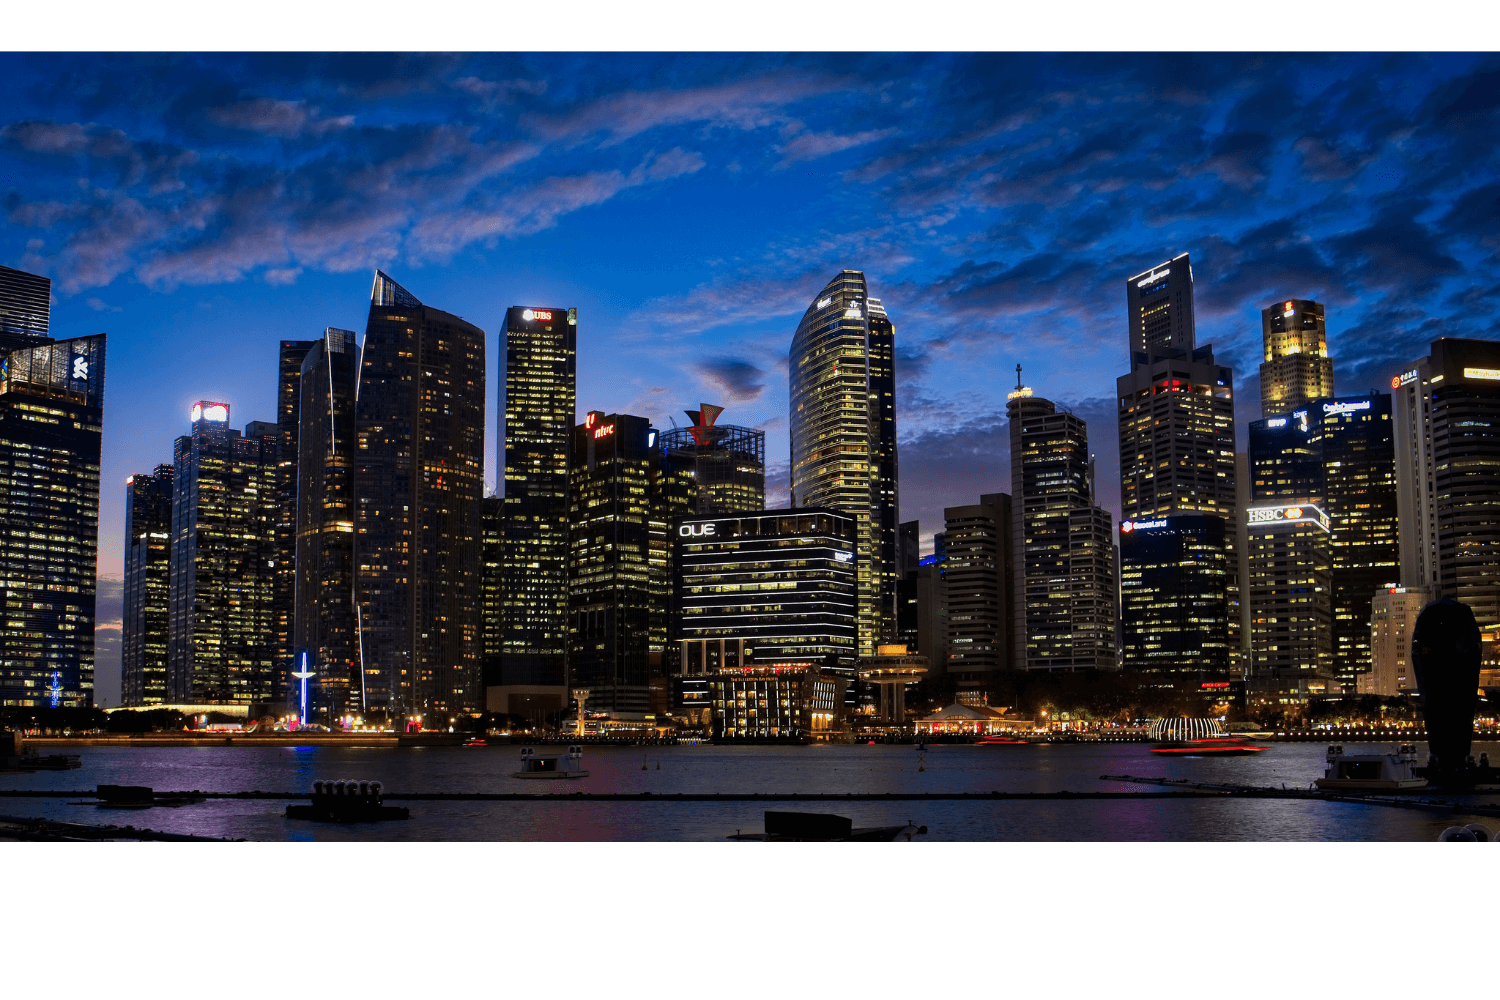 singaproe buildings at night